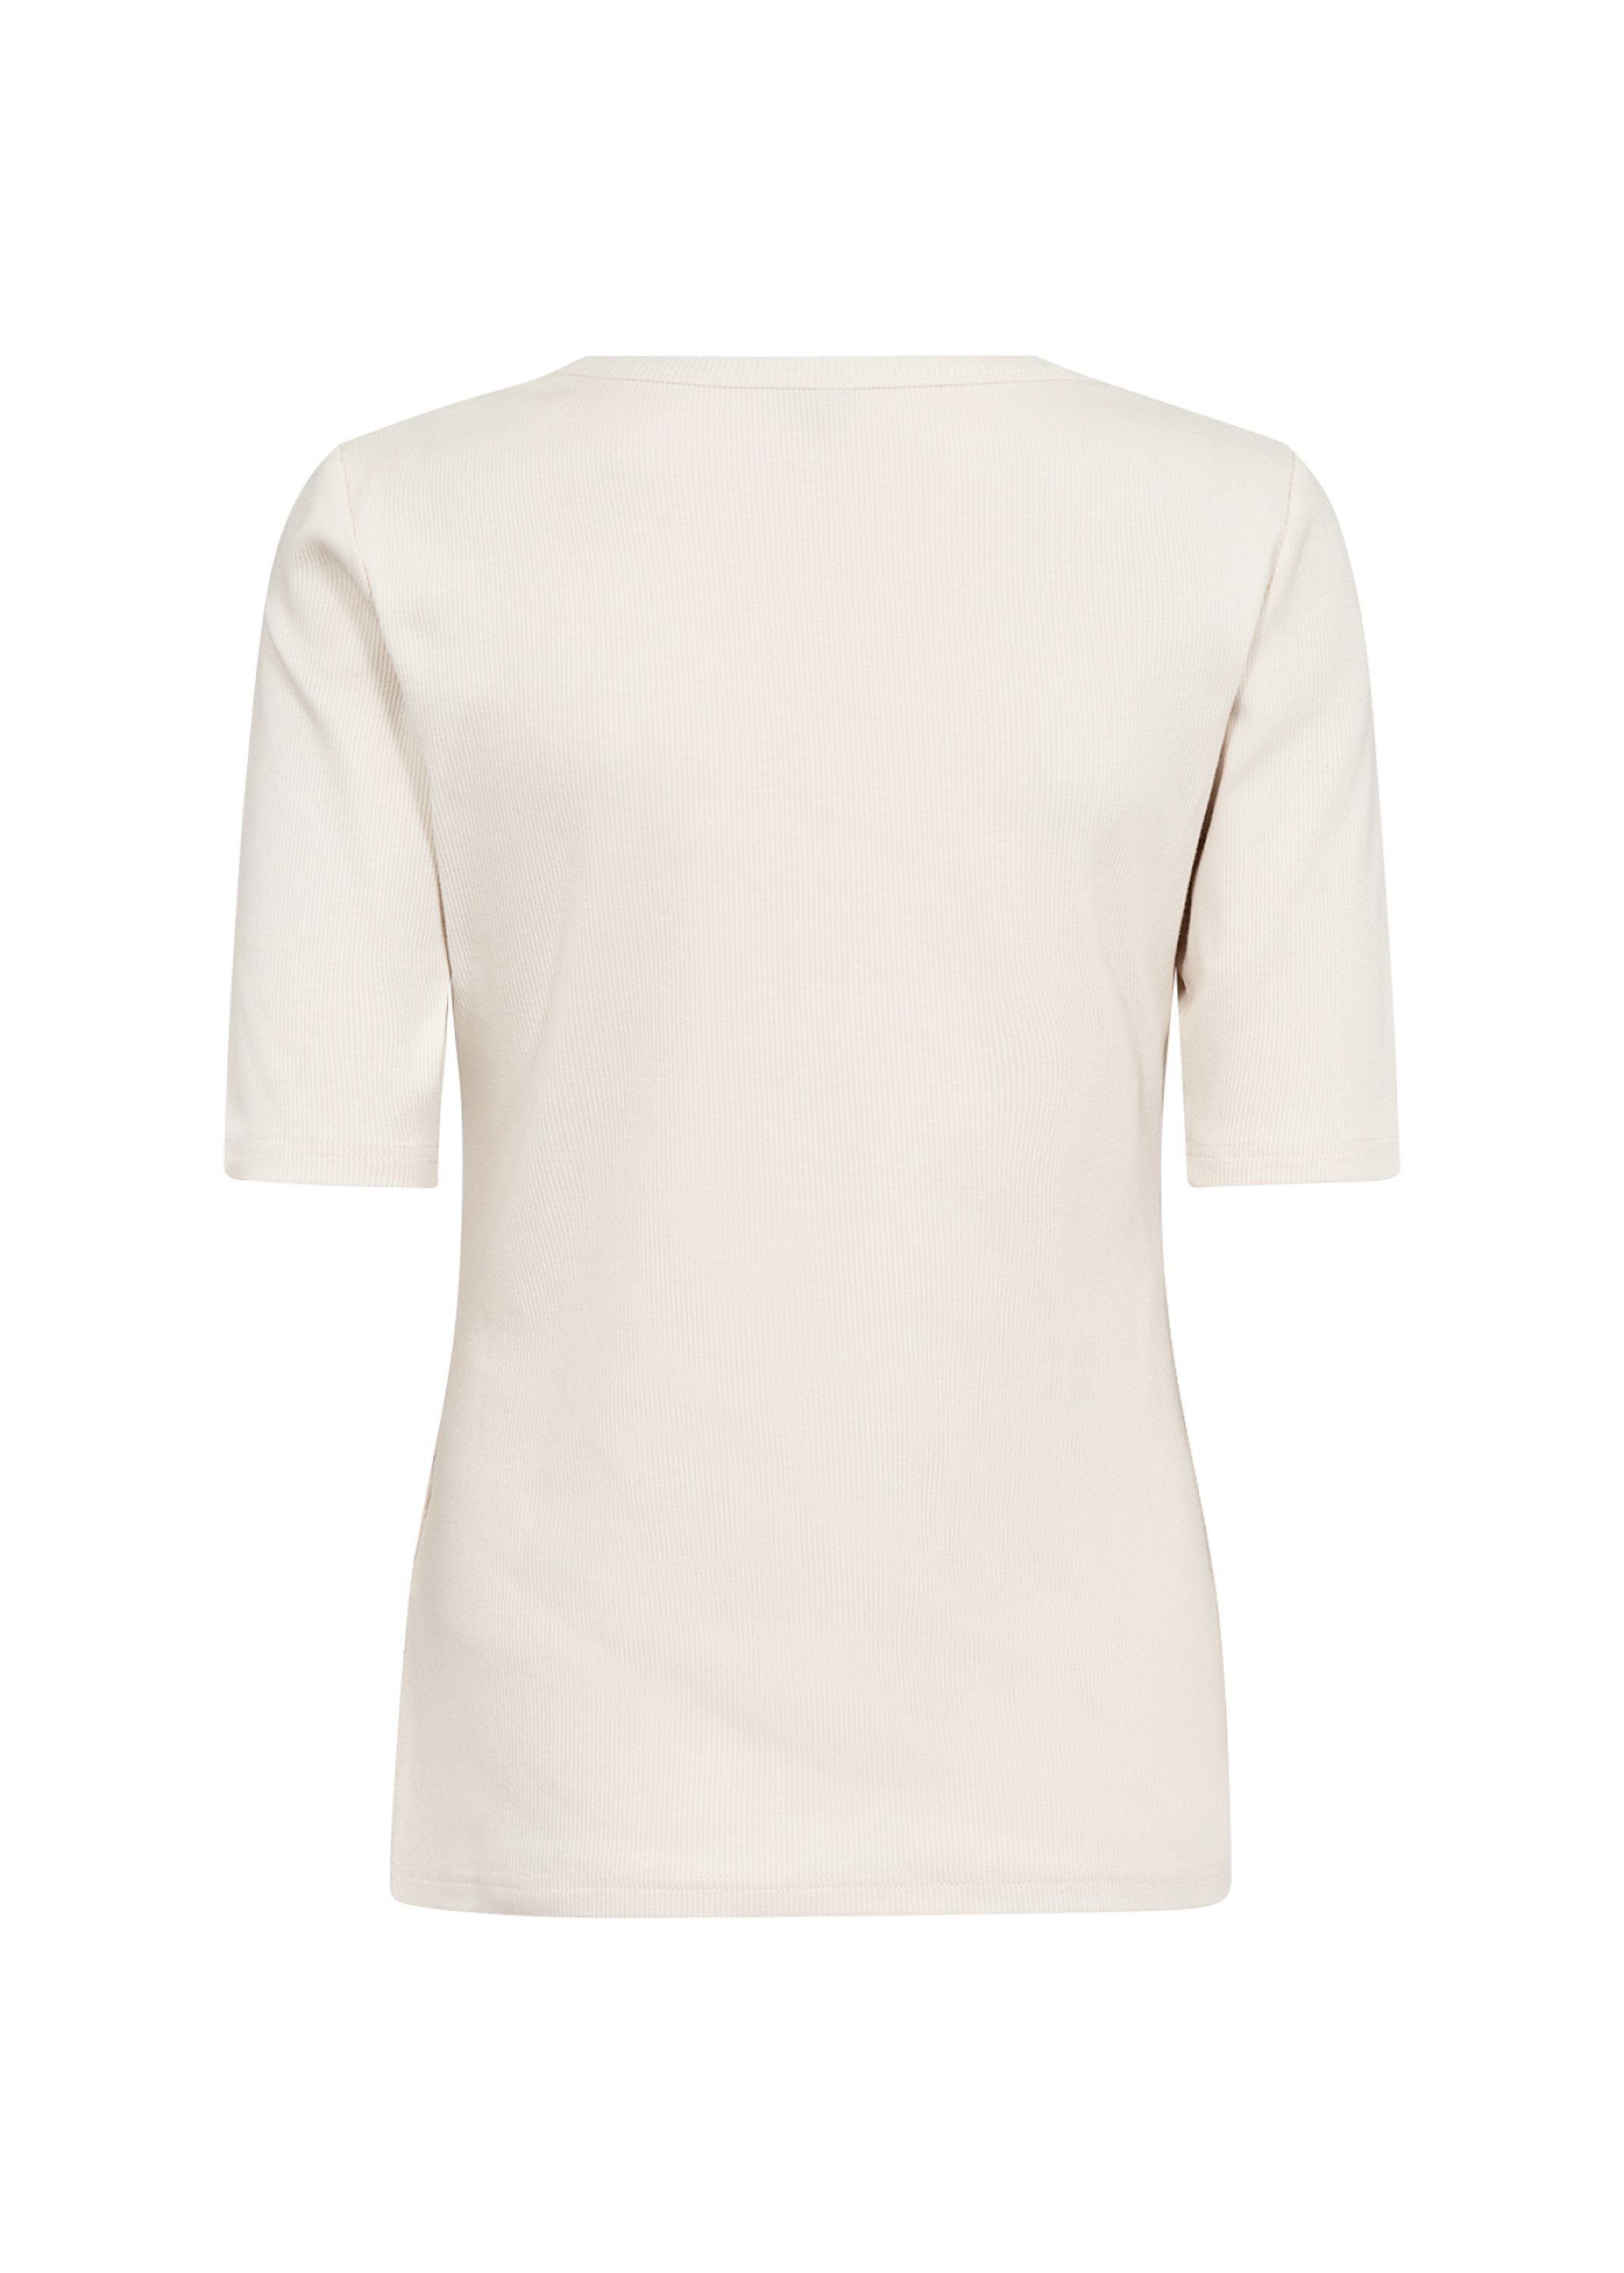 soyaconcept Rundhalsshirt, Das T-Shirt hat 3/4-Ärmel, einen  Rundhalsausschnitt und eine enge Passform